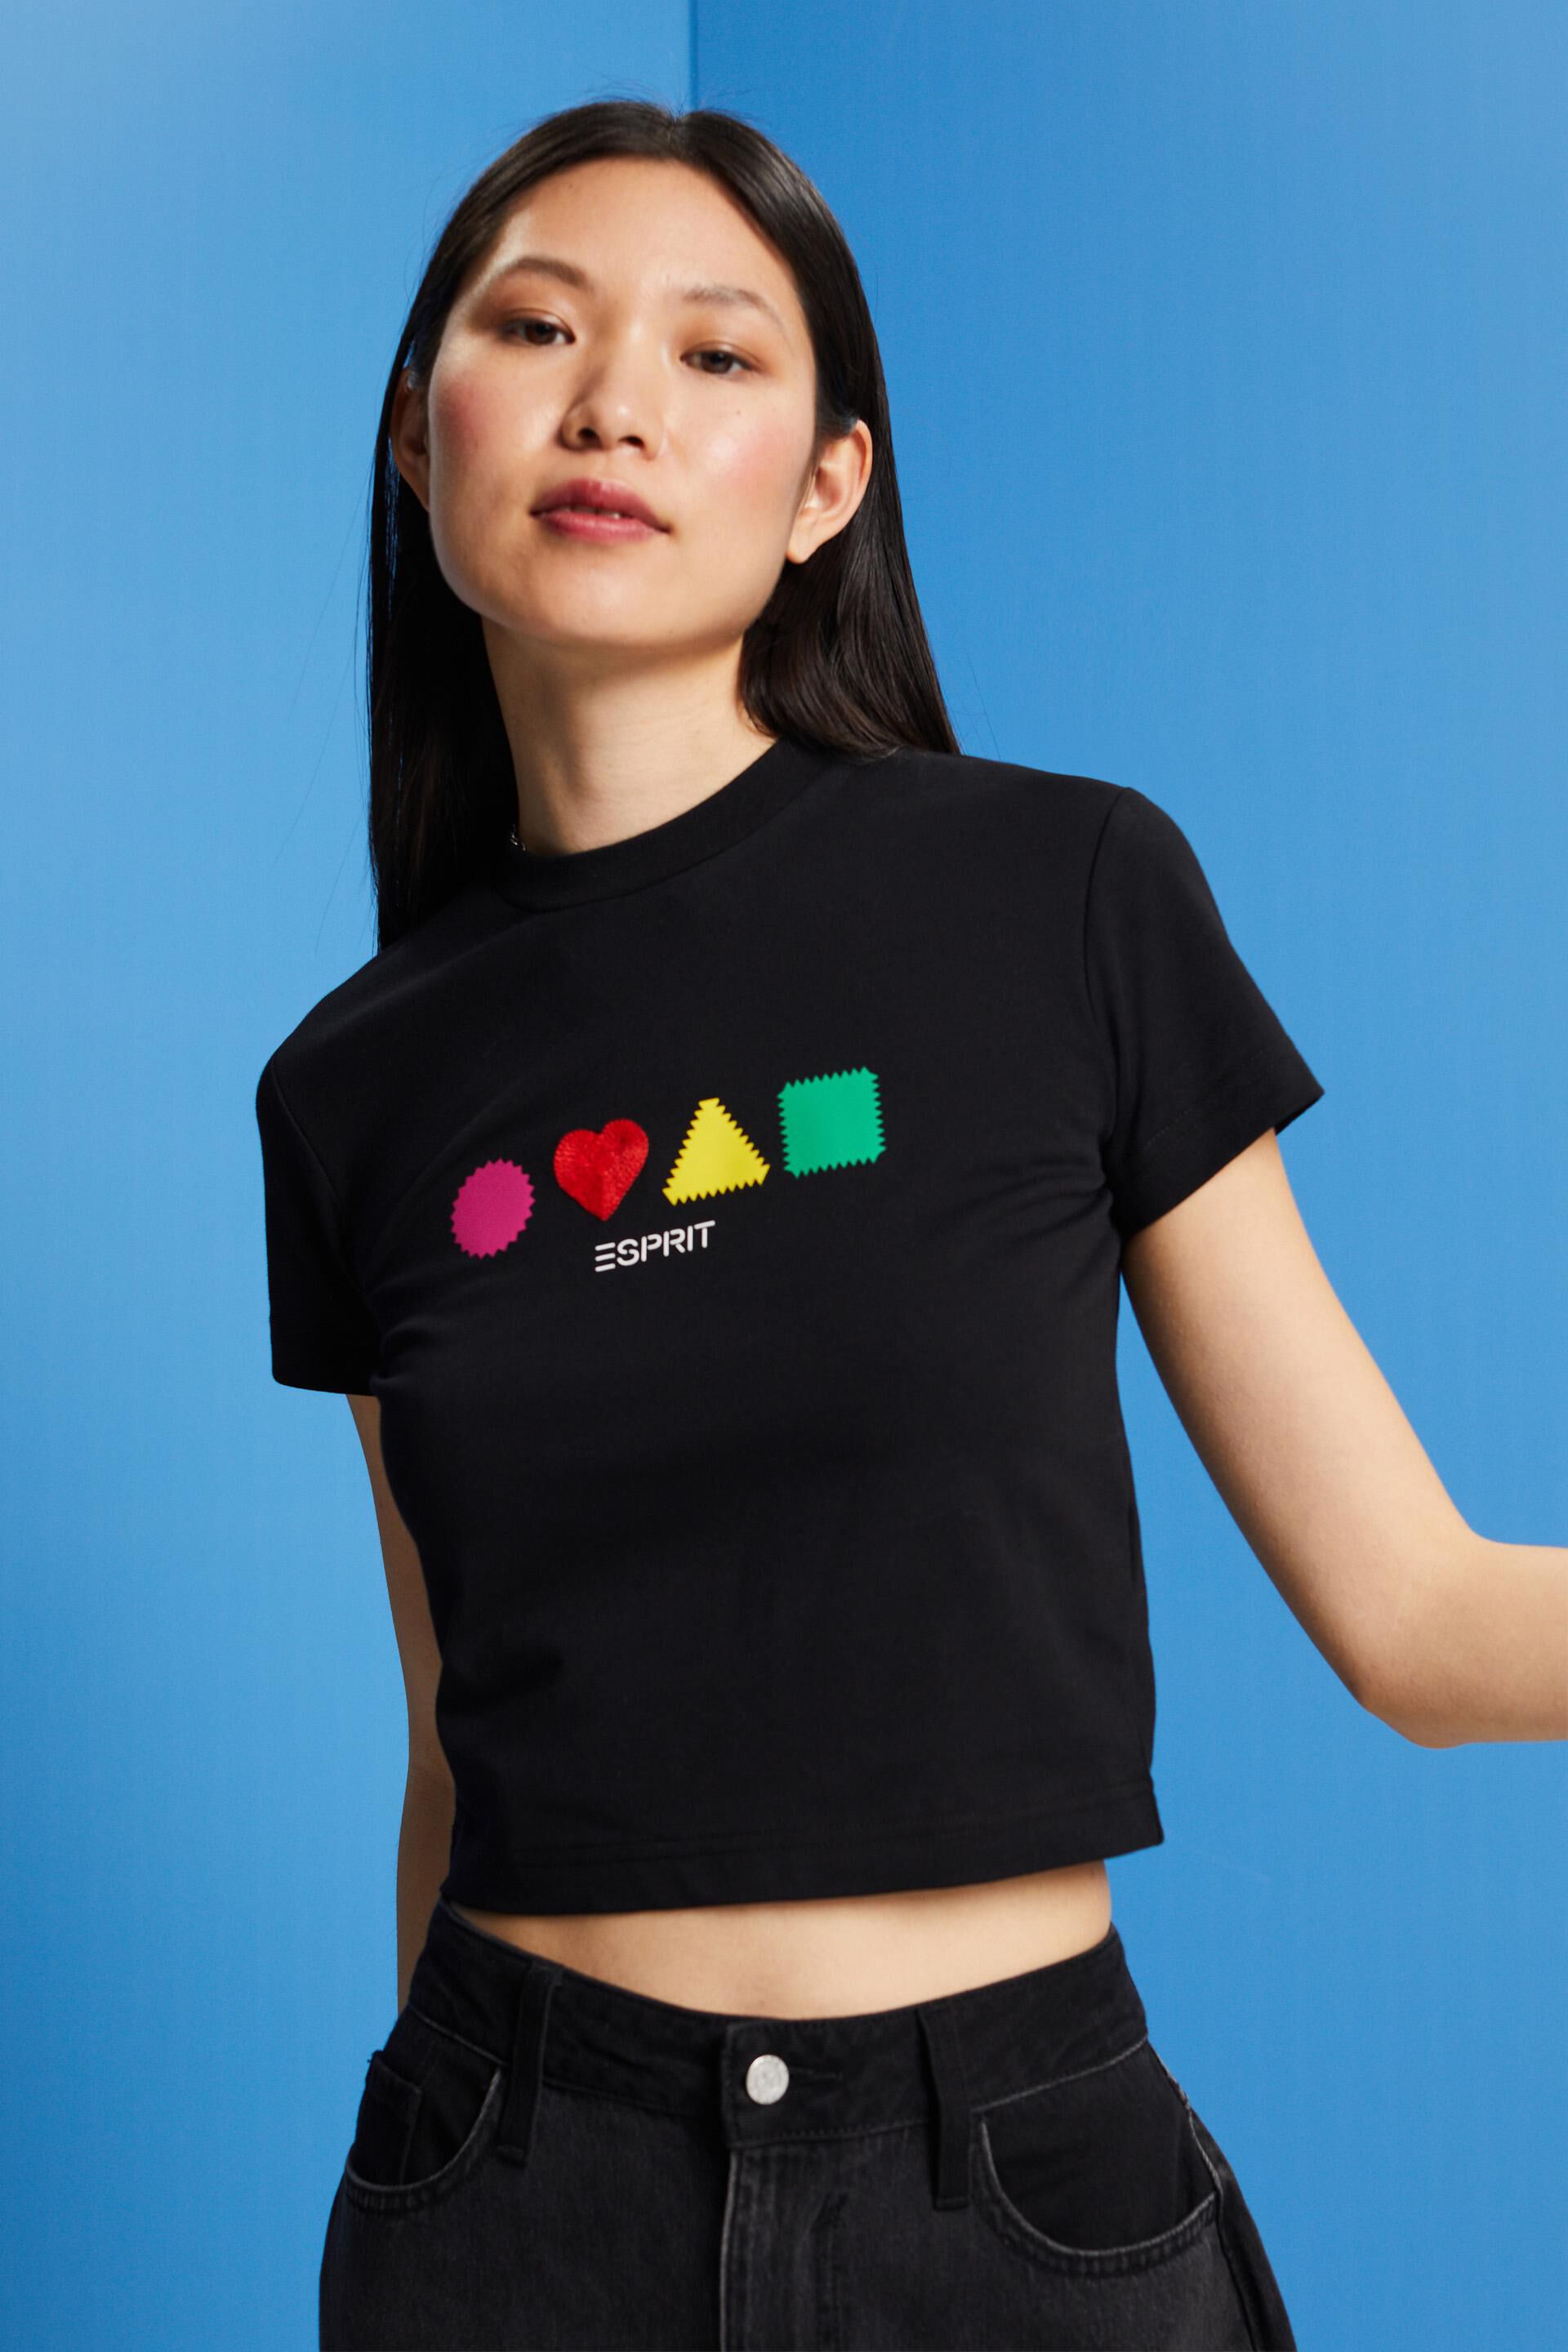 Esprit Damen Geometrisches T-Shirt aus Bio-Baumwolle